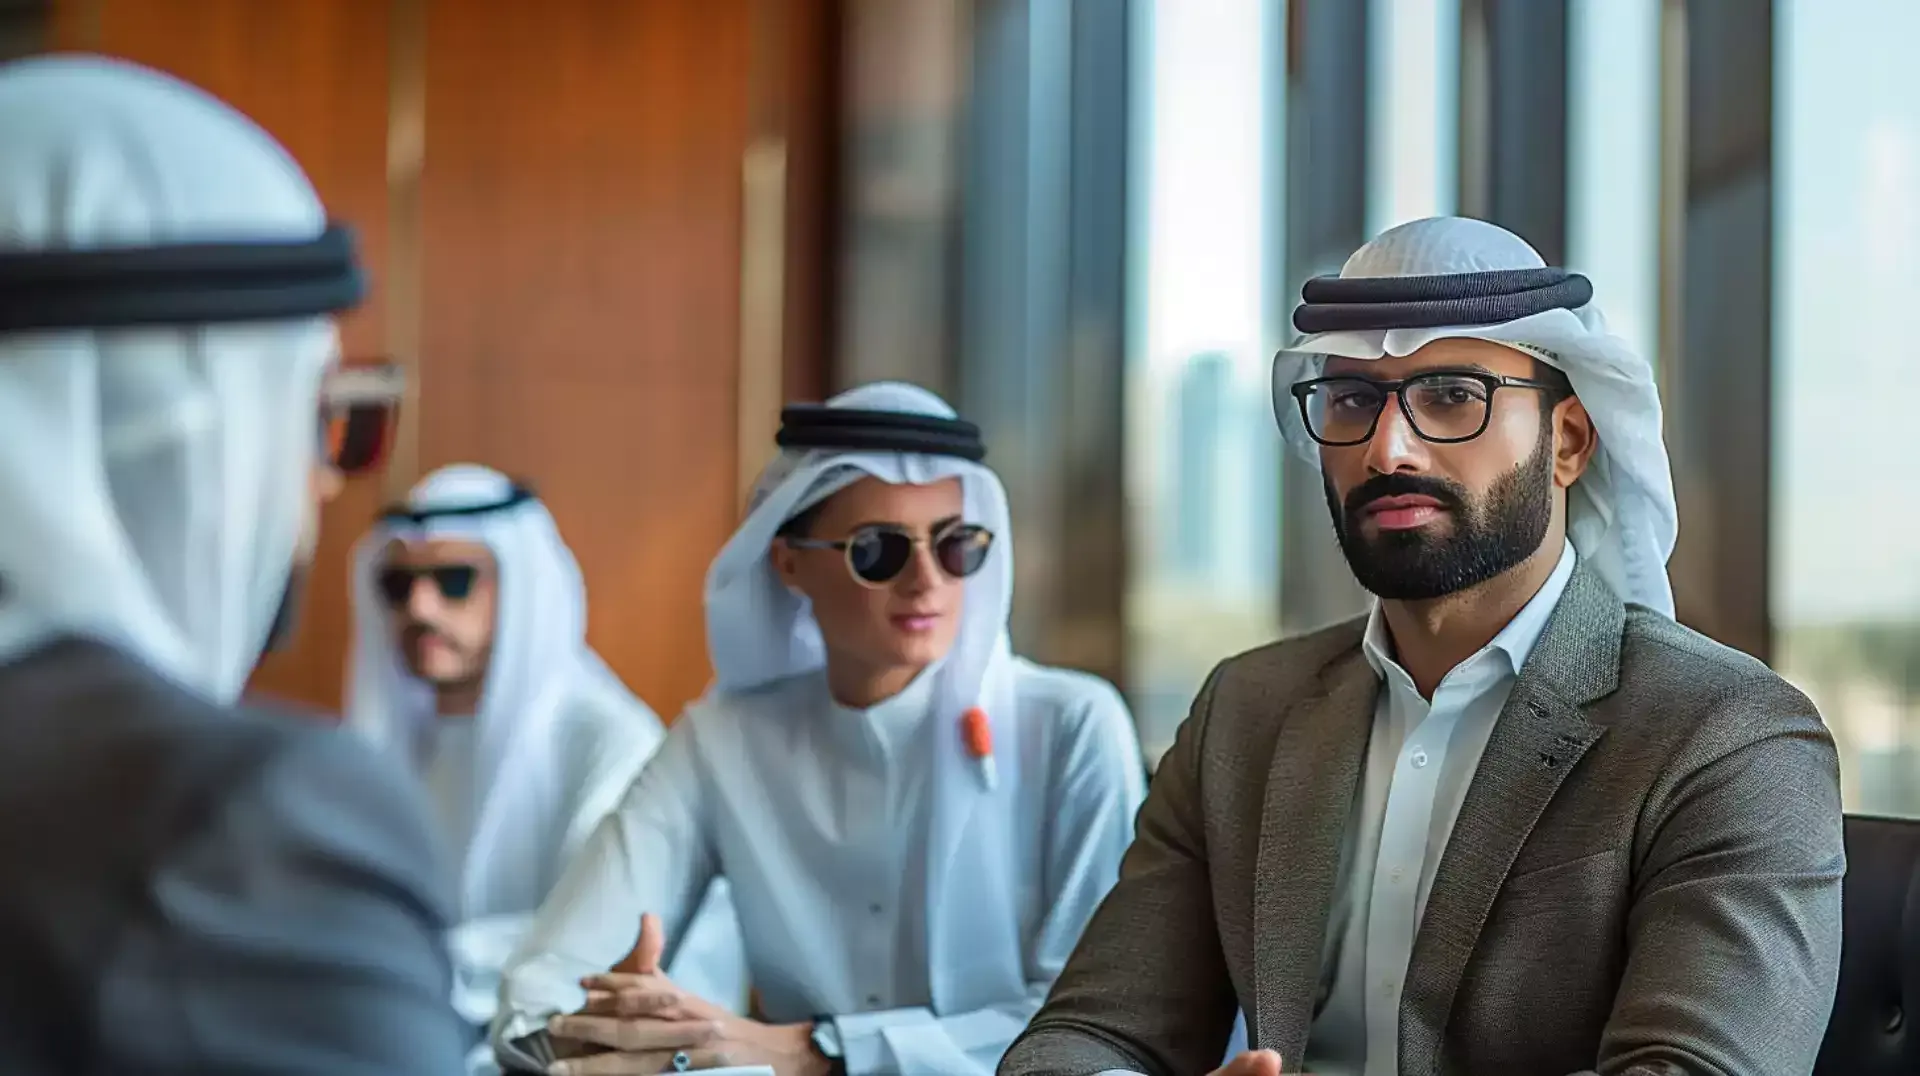 Entrepreneurial concept in Dubai